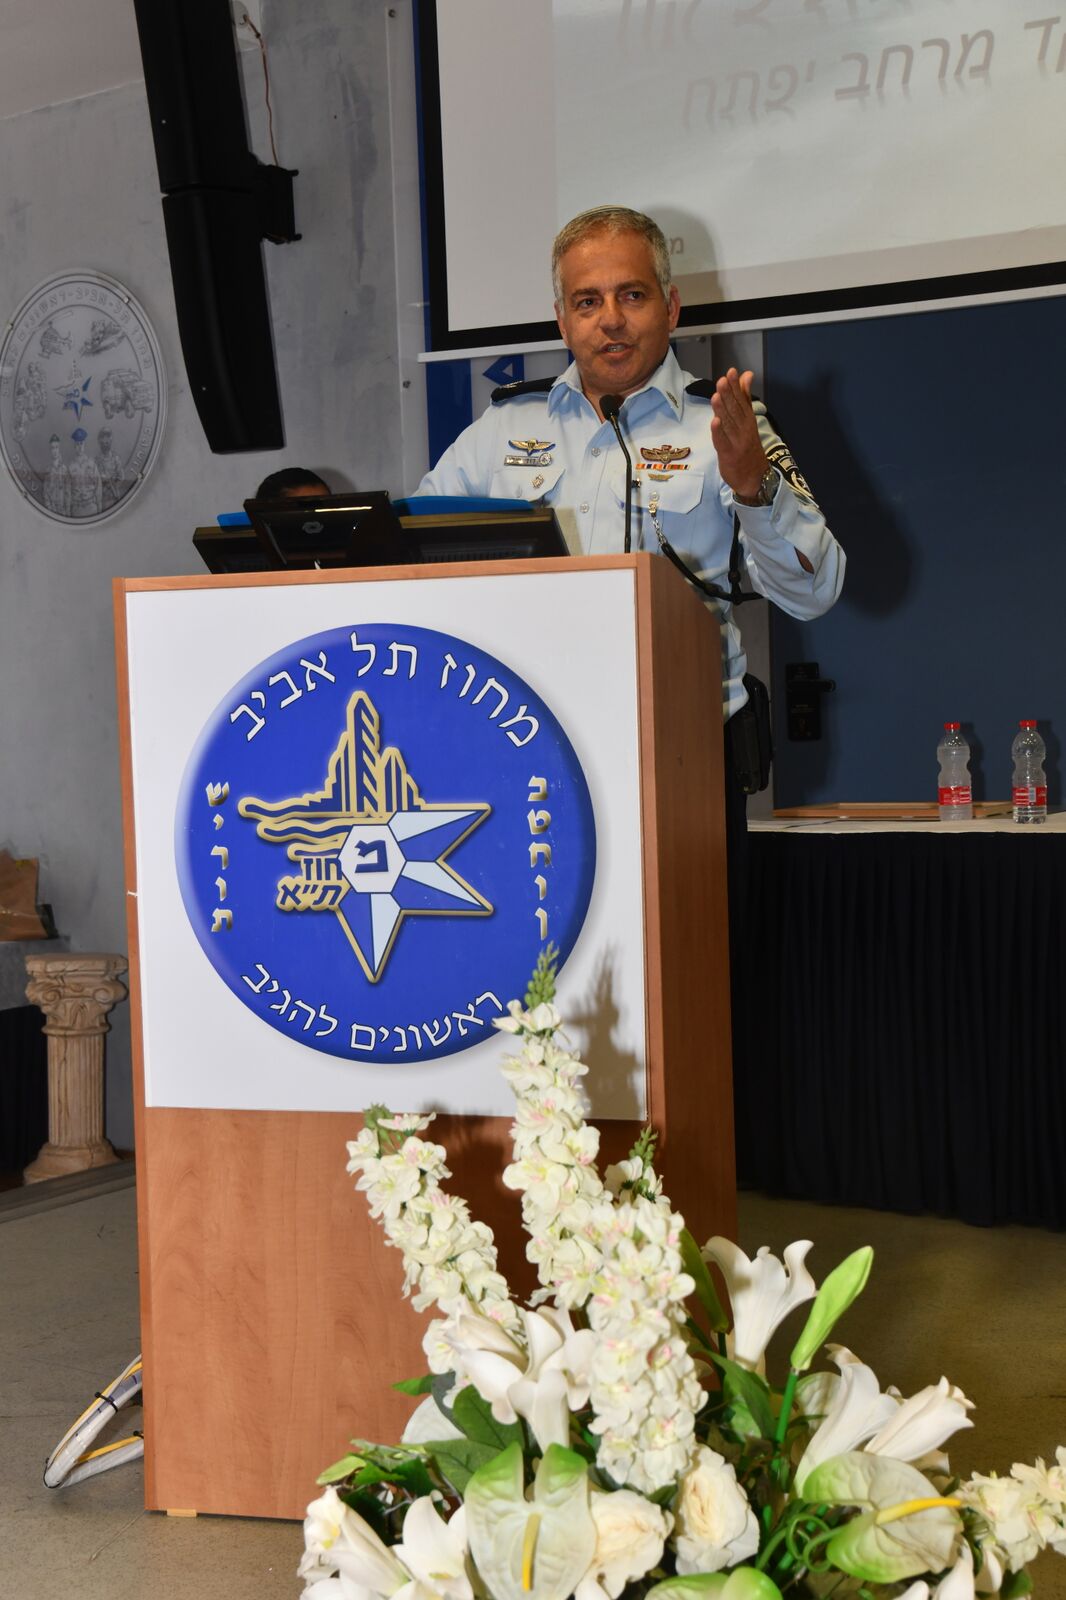 فيديو: تعيين قائد جديد للشرطة في يافا بحضور شخصيات ورجال أعمال 